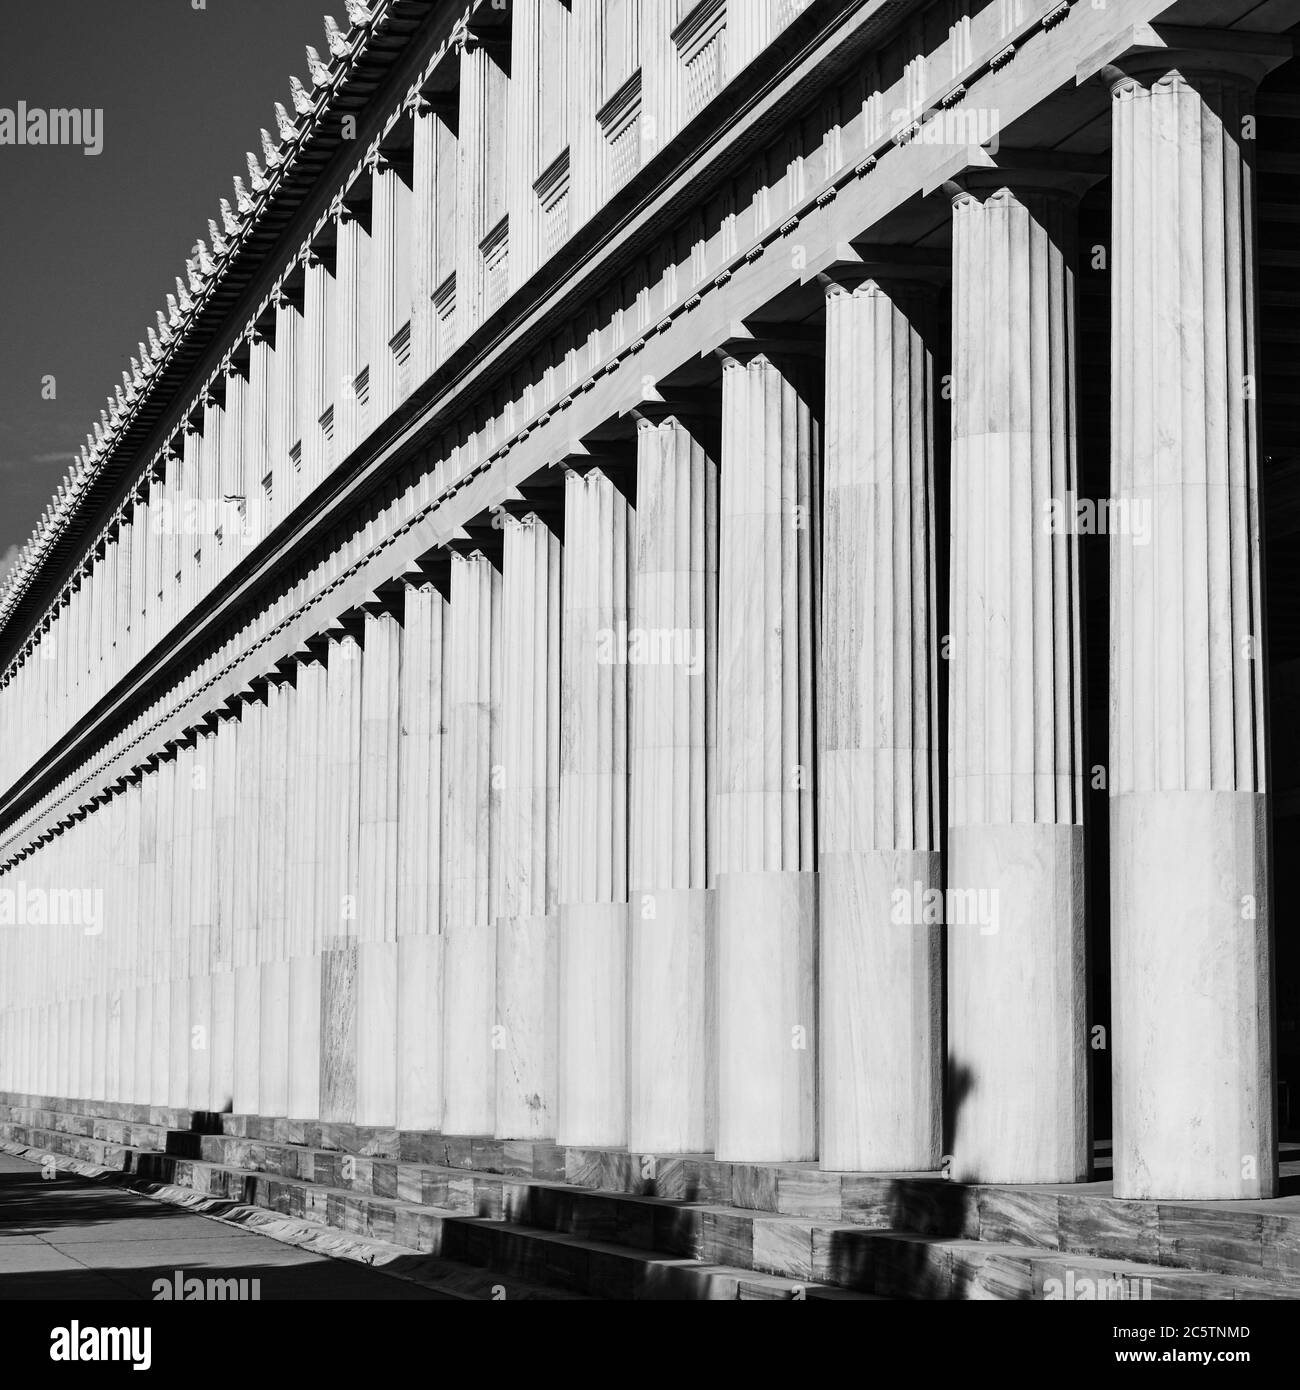 Fila di colonne greche cassiche, Atene, Grecia. Fotografia architettonica in bianco e nero Foto Stock